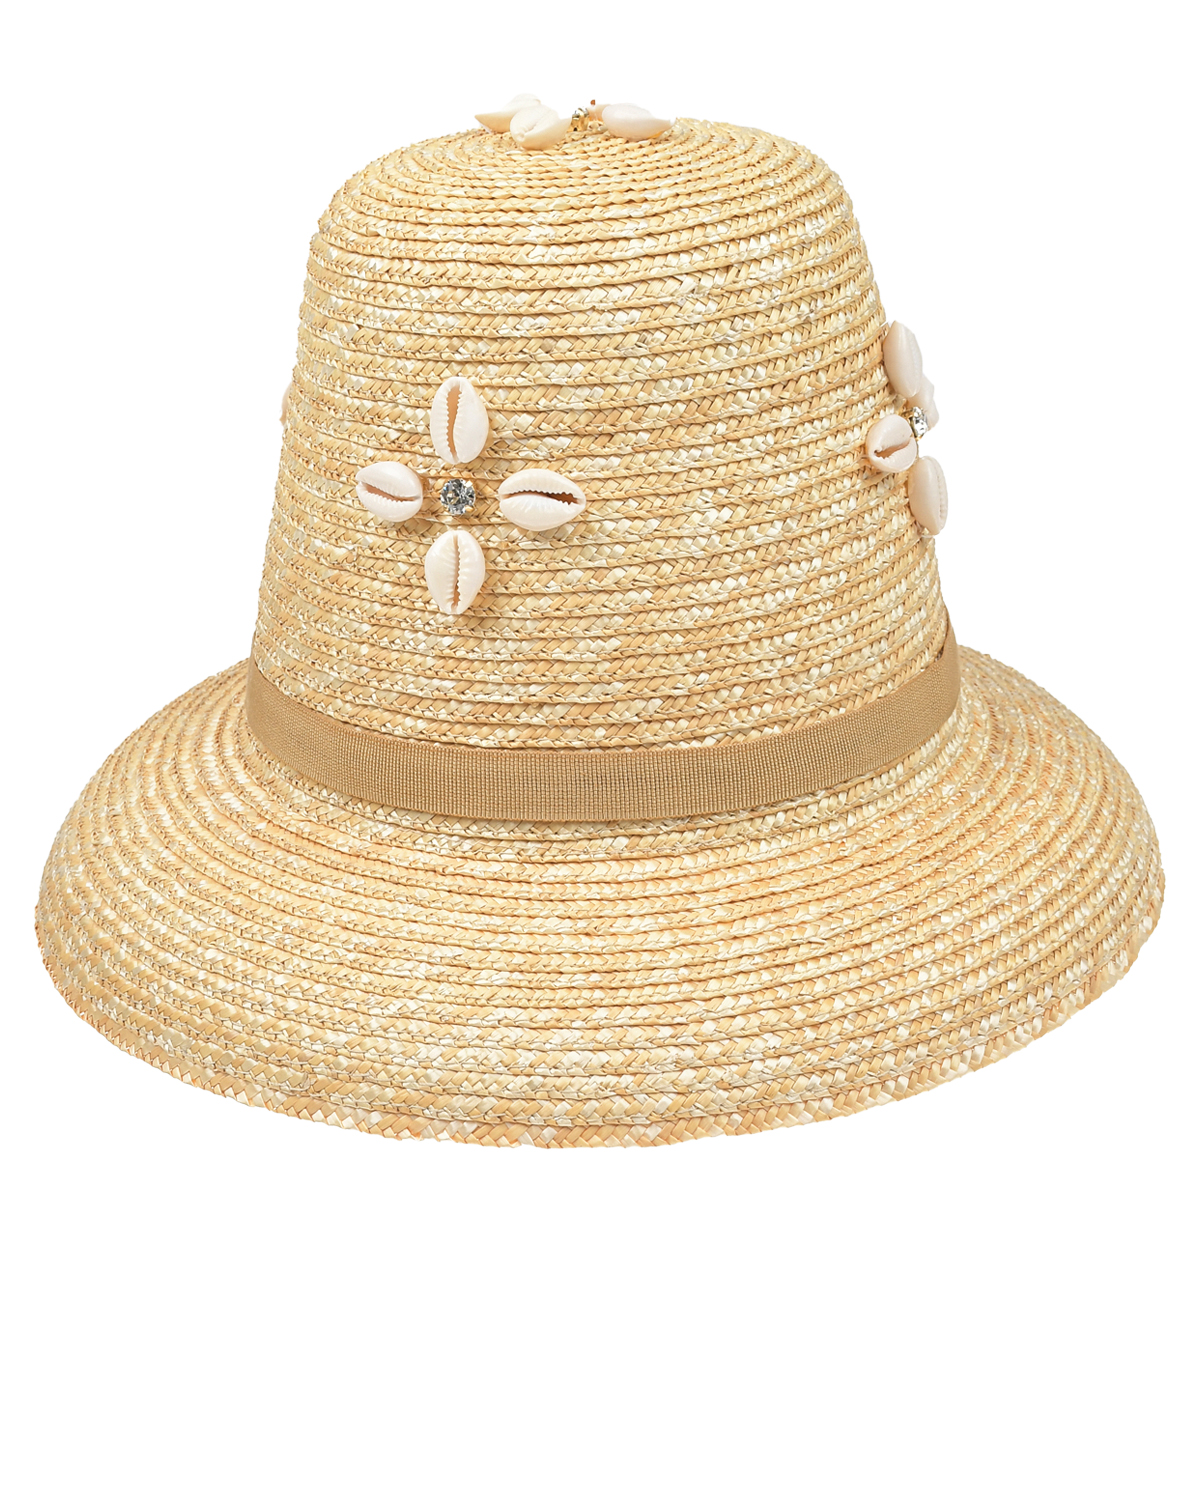 Бежевая плетеная шляпа с ракушками Le Nine, размер unica, цвет бежевый